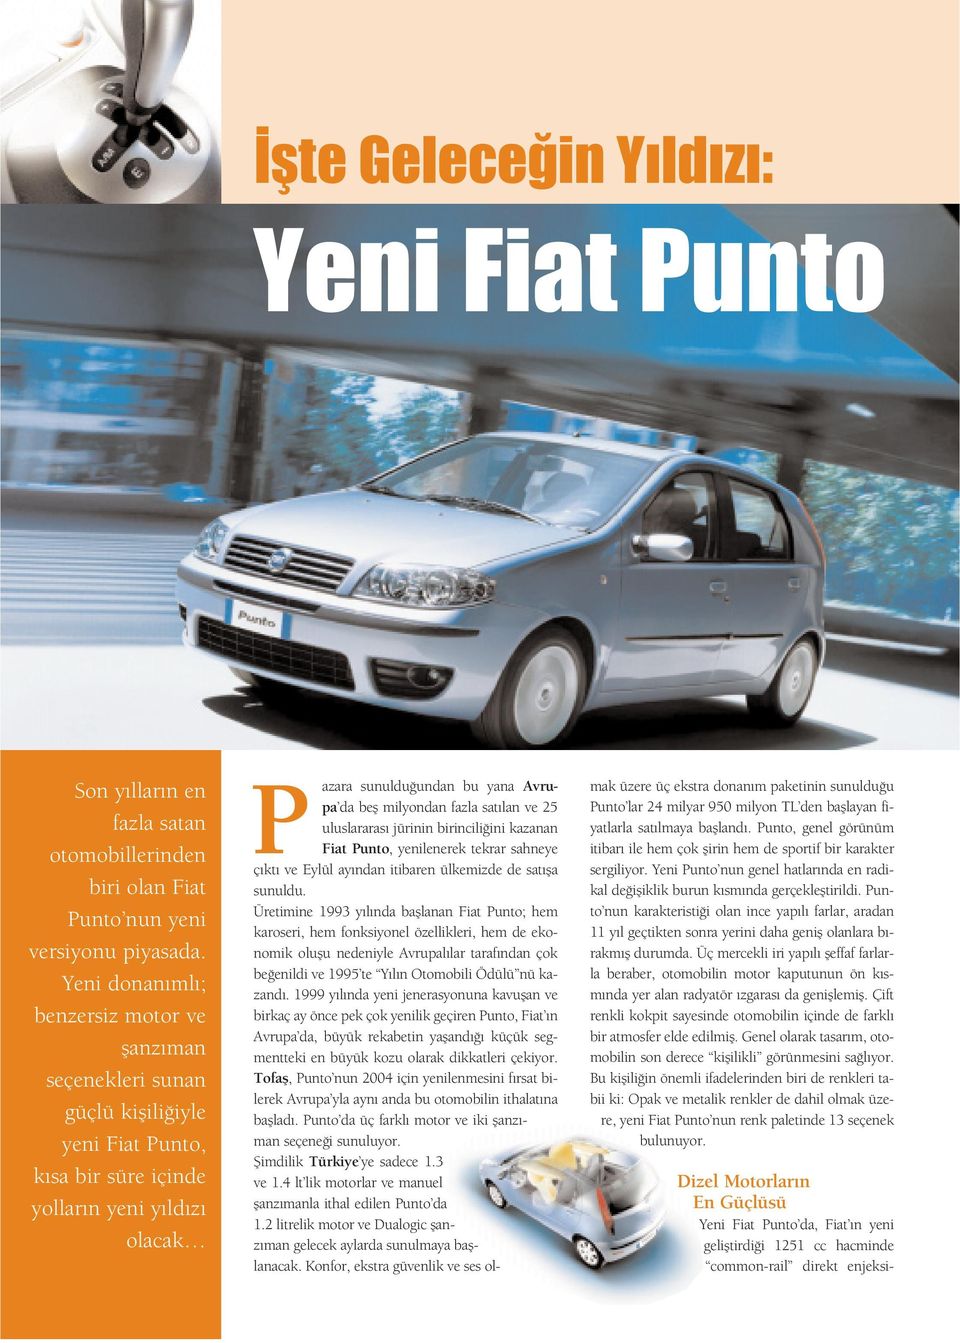 milyondan fazla sat lan ve 25 uluslararas jürinin birincili ini kazanan Fiat Punto, yenilenerek tekrar sahneye ç kt ve Eylül ay ndan itibaren ülkemizde de sat fla sunuldu.